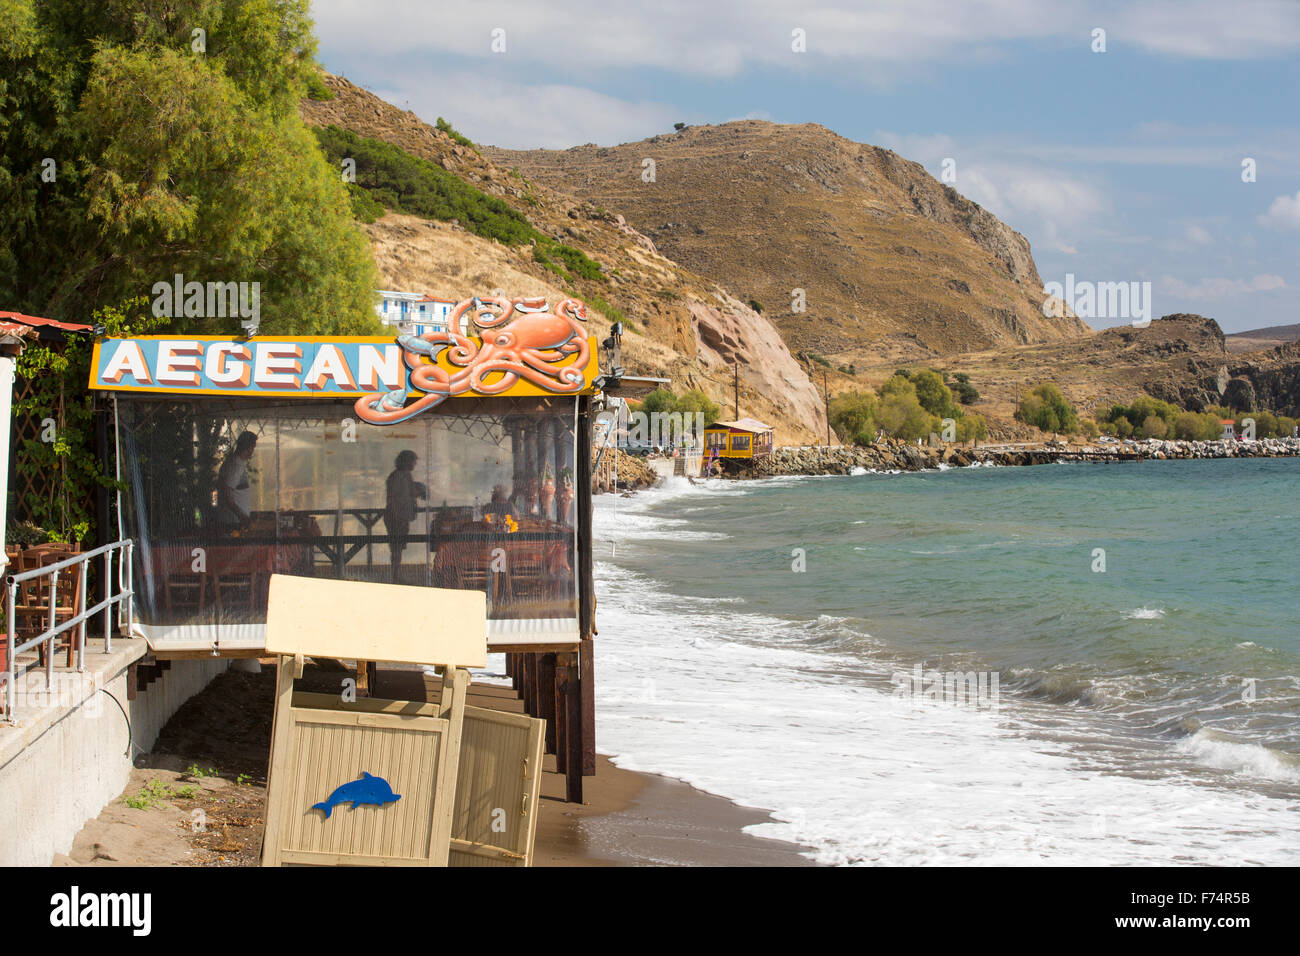 Una taverna sobre el mar, en Skala Eresou, en Lesvos, Grecia. Foto de stock